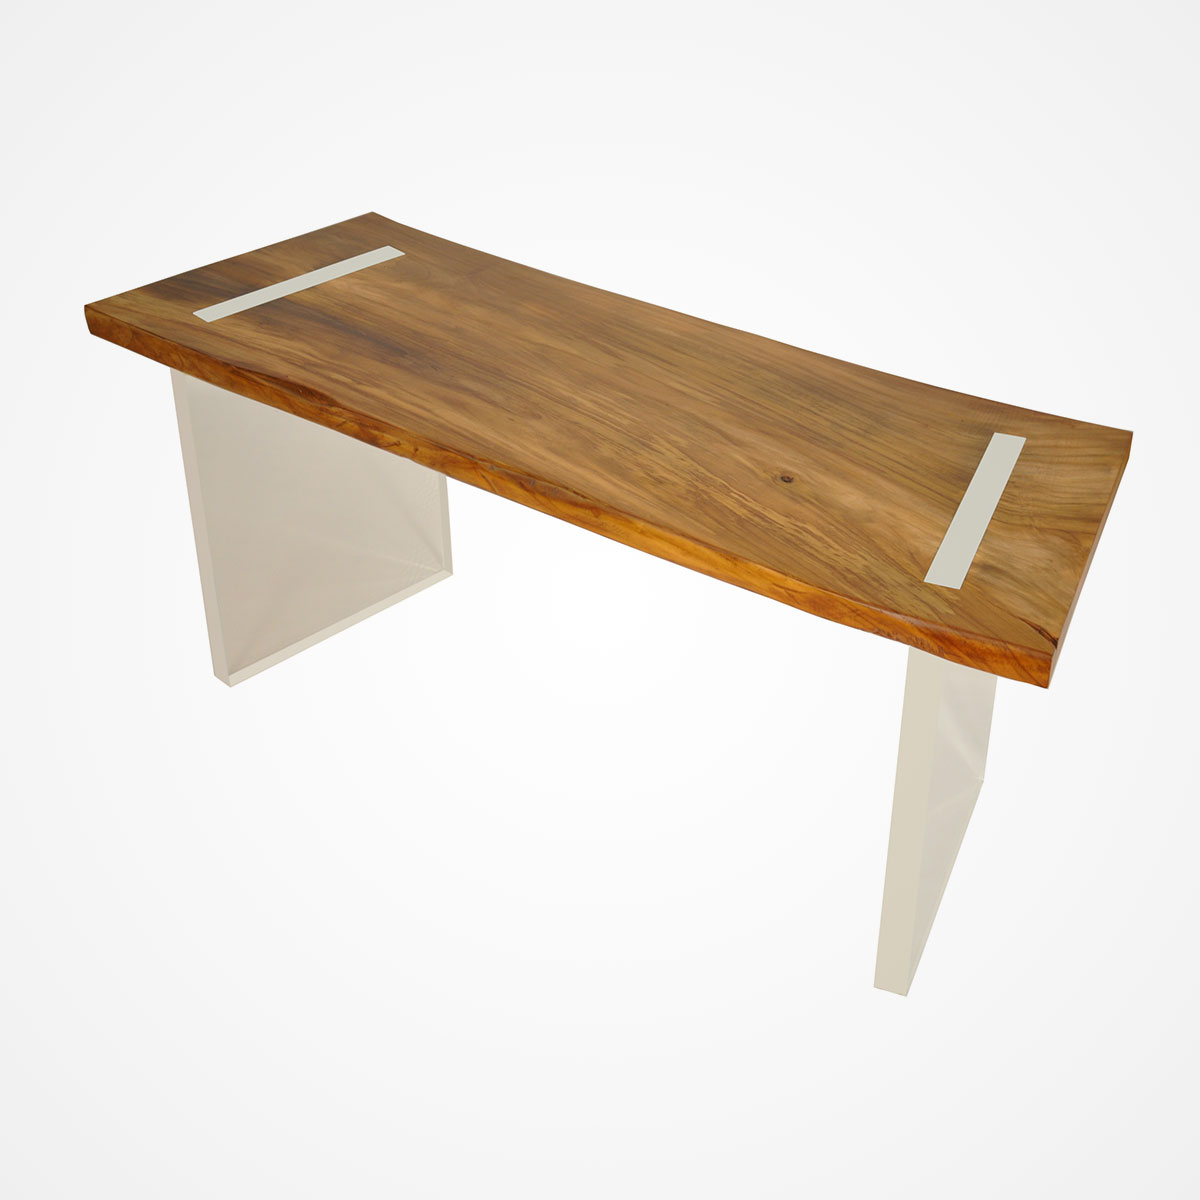 Reclaimed Wood Desk Video | HGTV